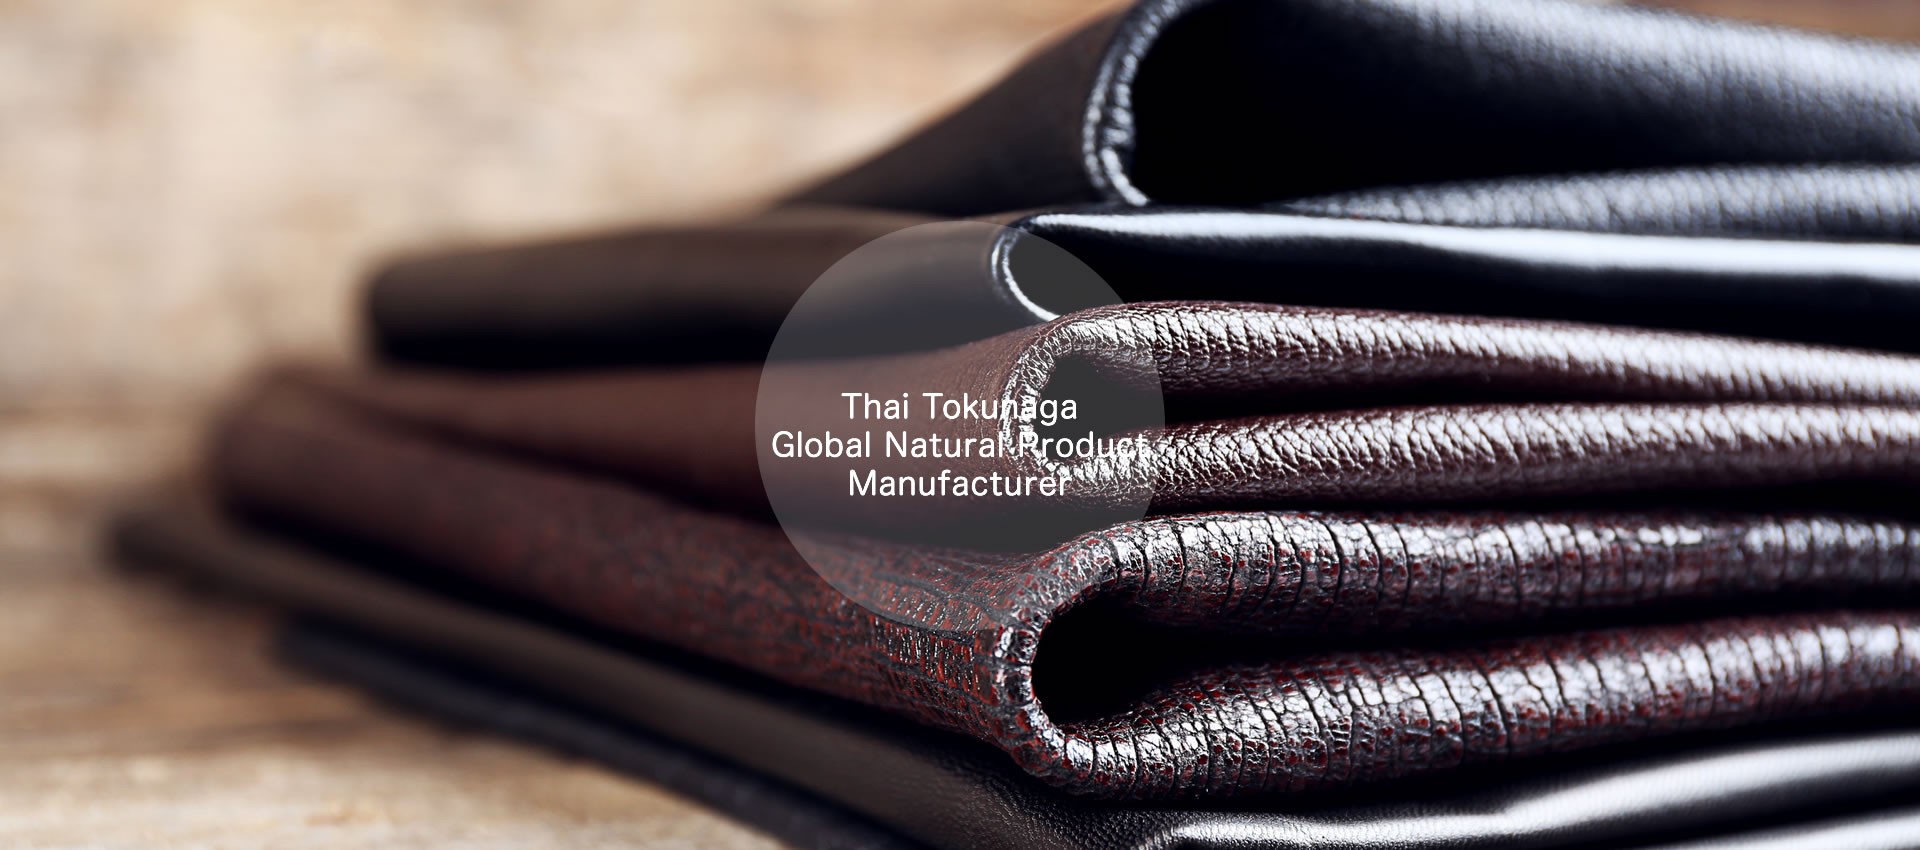 泰徳永は世界各国から最もコストパフォーマンスの優れた皮革製造の原材料を厳選し、輸入しています。